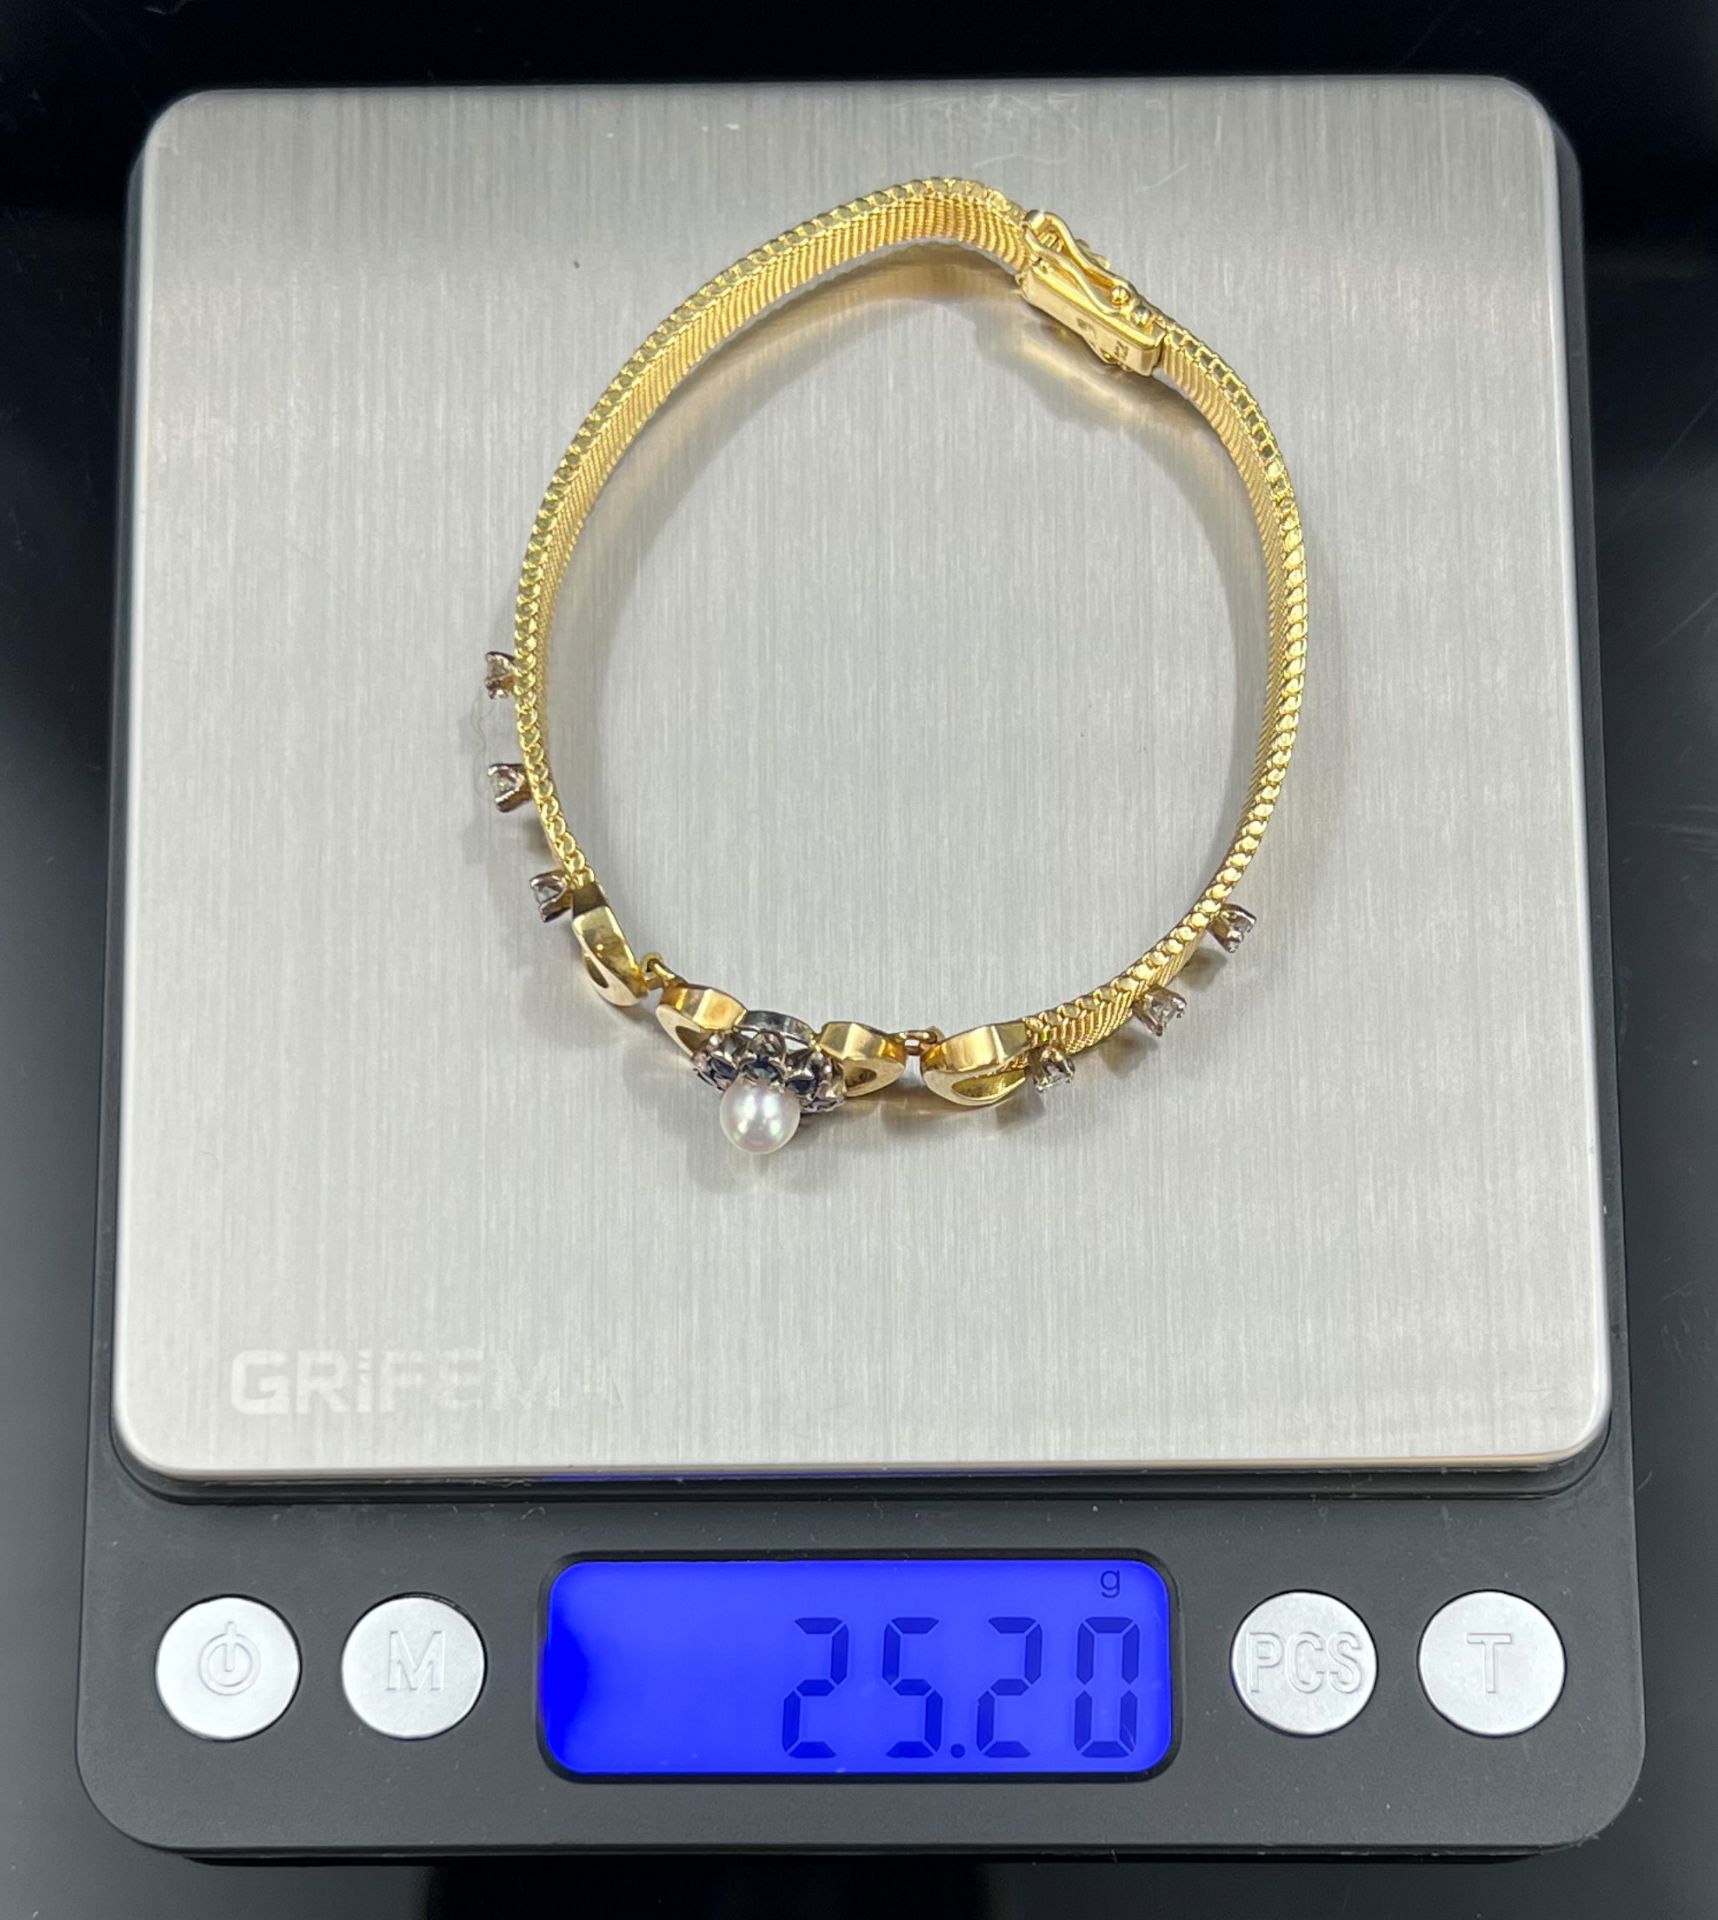 Armband. 750 Gelbgold mit Diamanten, Saphiren und einer Perle. - Bild 5 aus 5